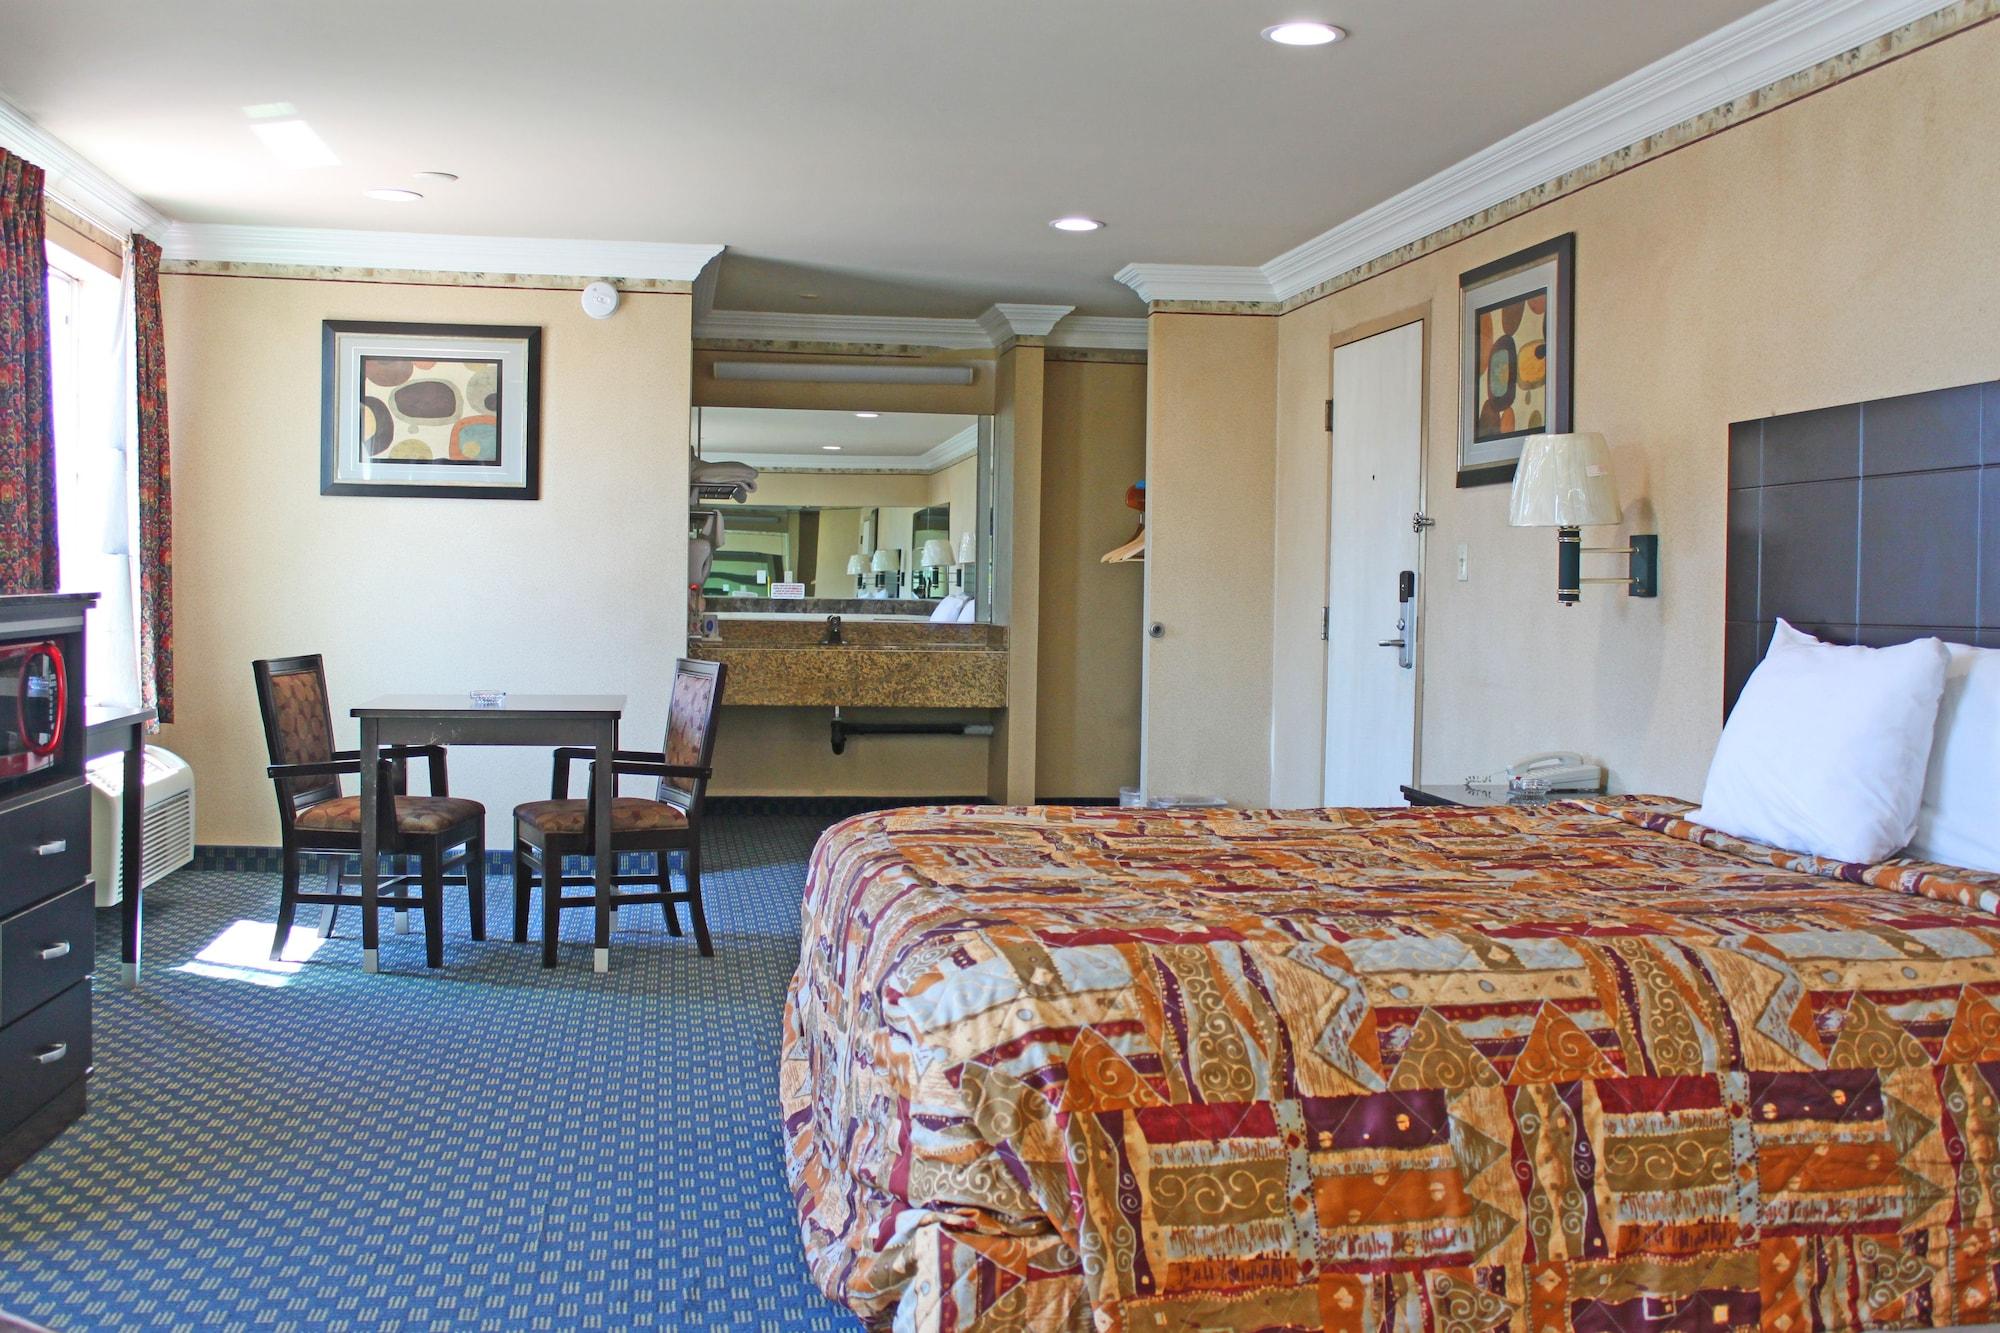 Crystal Inn Suites & Spas Inglewood Exterior foto